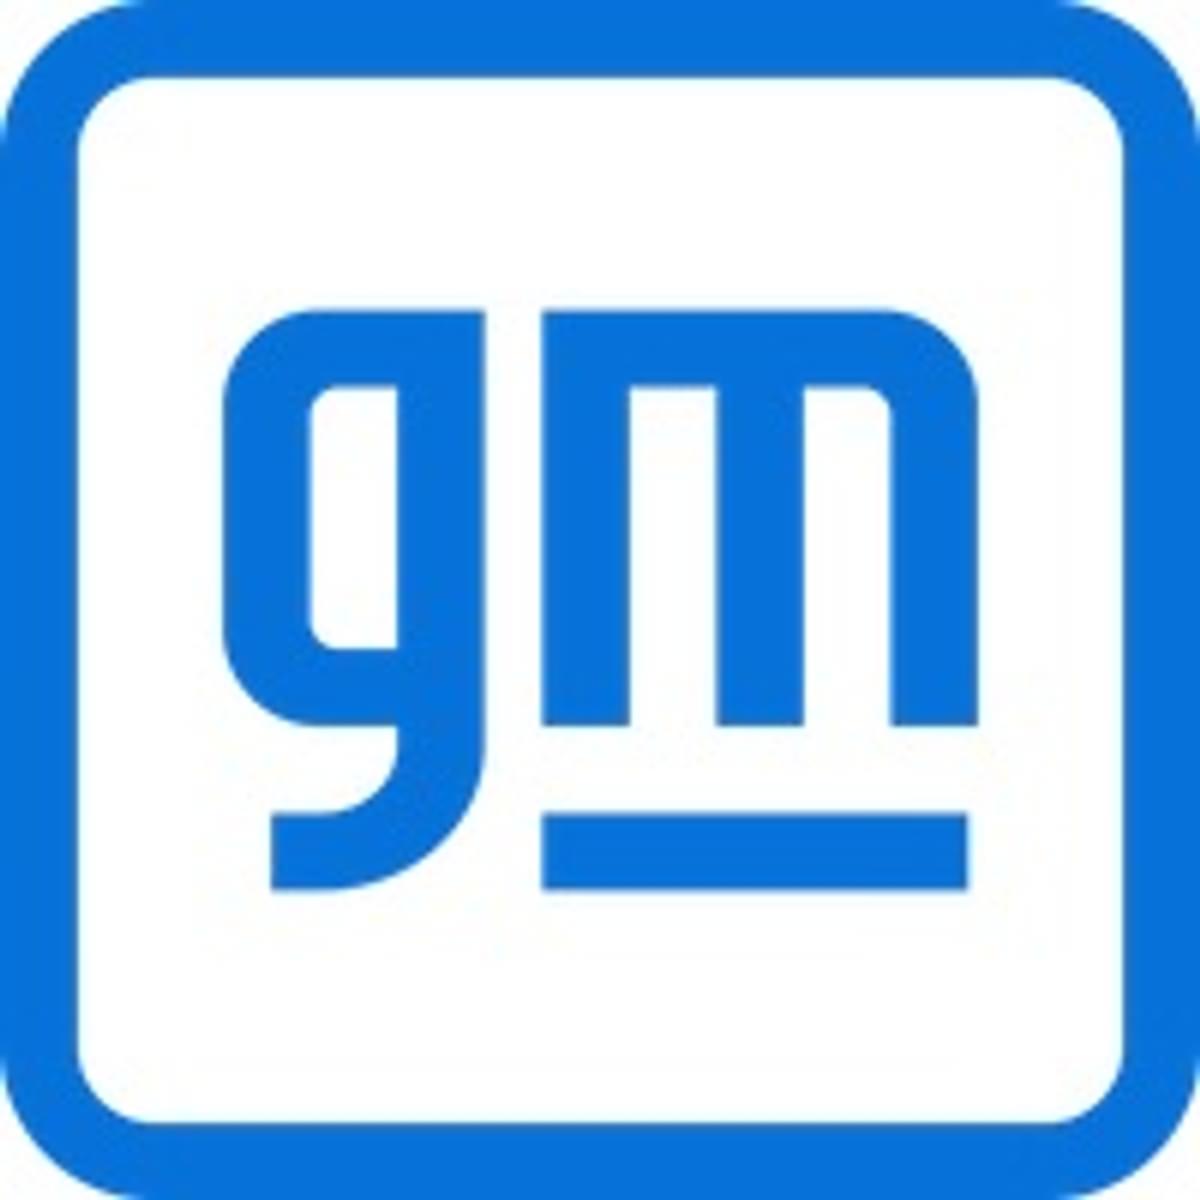 Chiptekort leidt tot stilleggen fabrieken van General Motors image